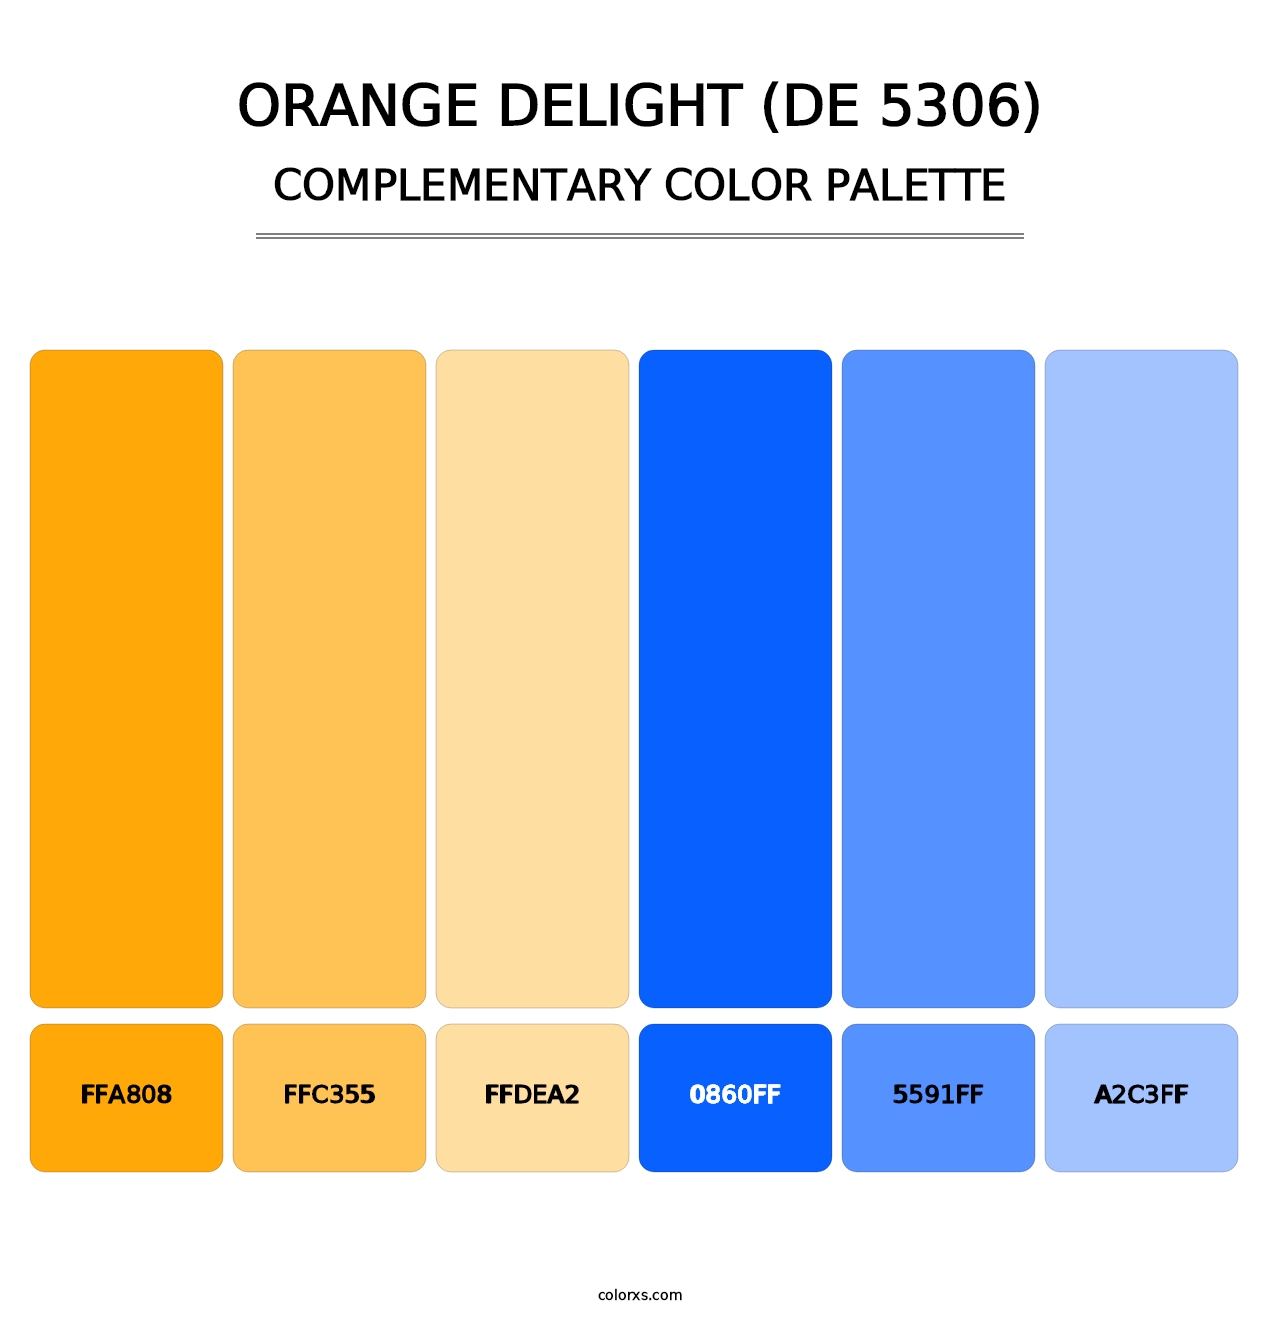 Orange Delight (DE 5306) - Complementary Color Palette